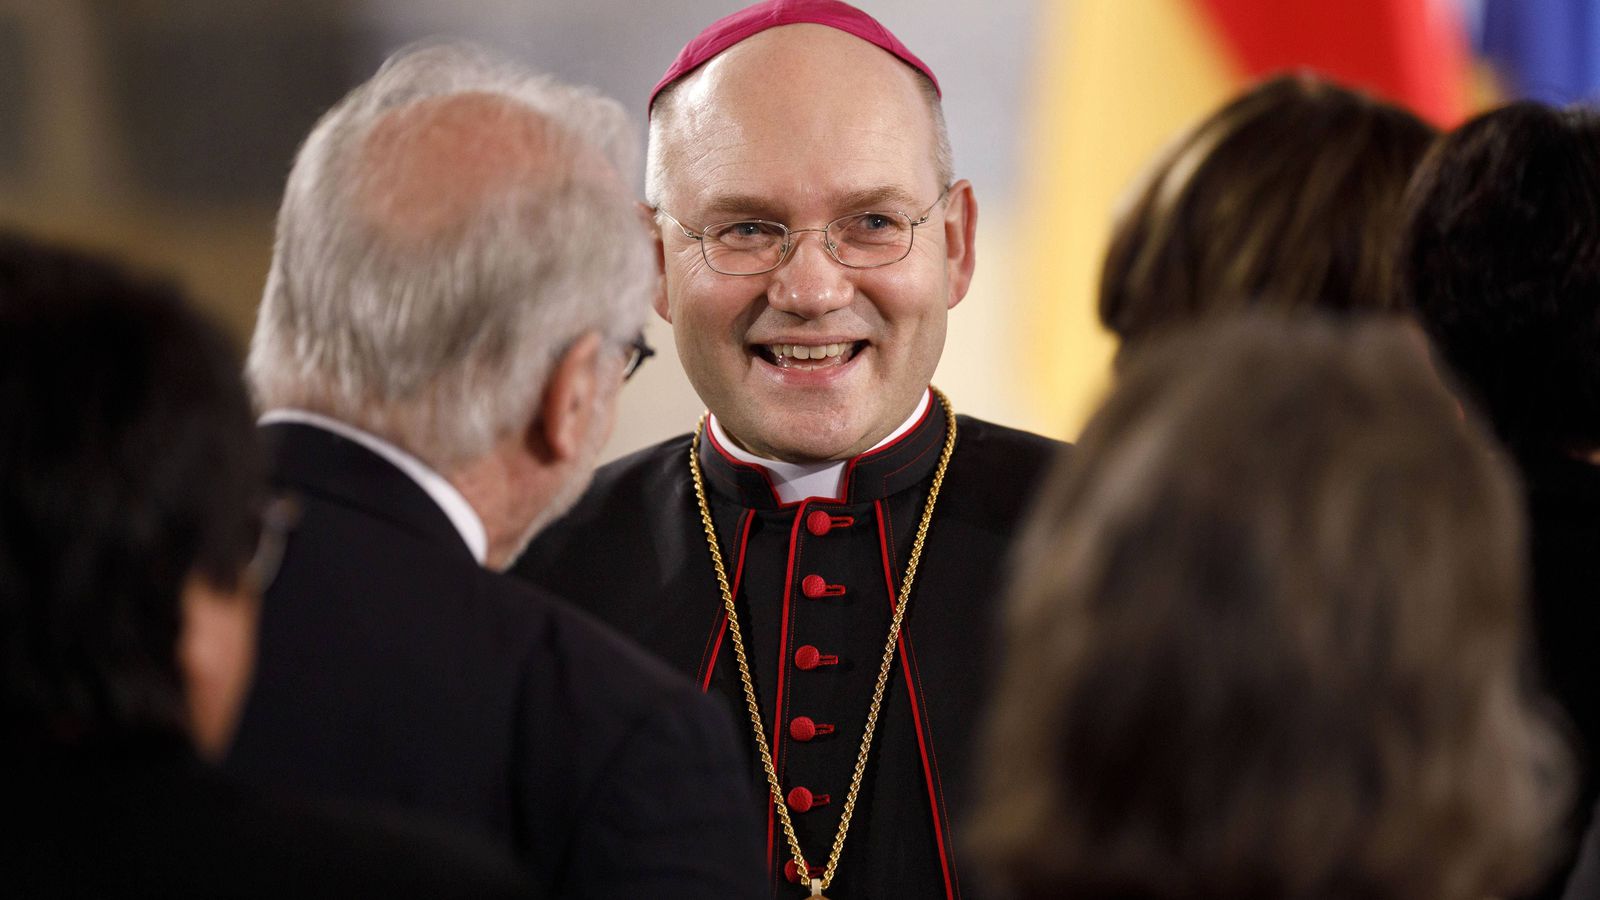 Il vescovo tedesco rompe i tabù: "L'omosessualità non è errore ma volontà di Dio"